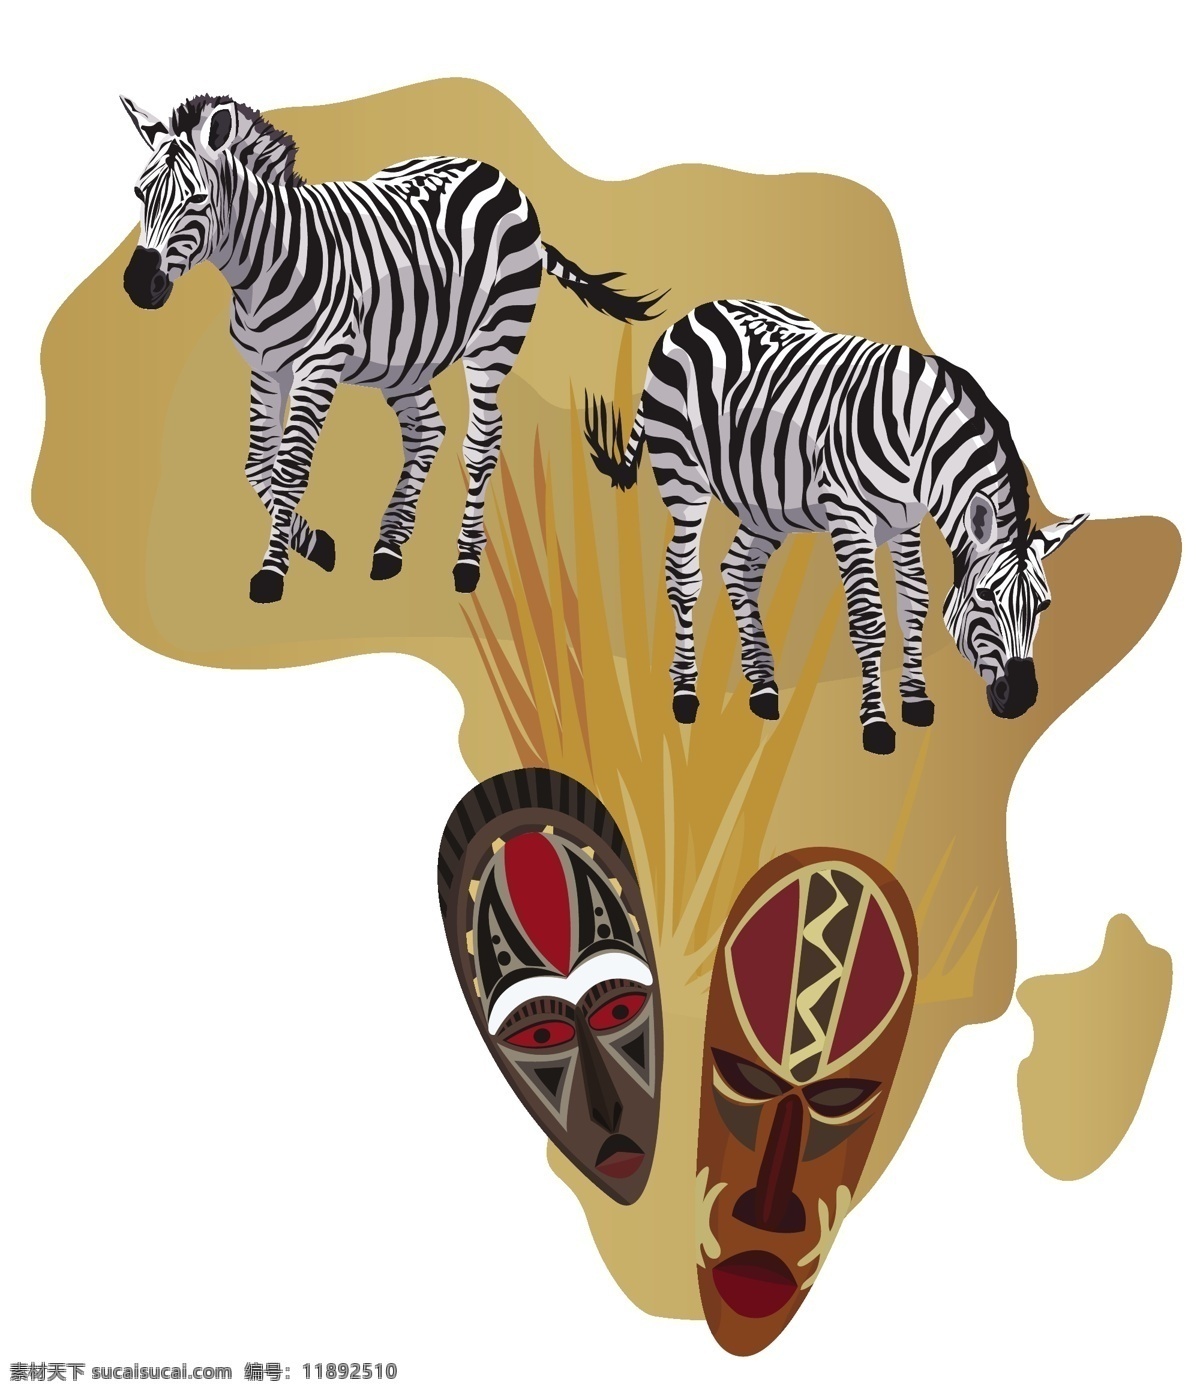 아프리카 무늬 추상 민족 장식 배경, 아프리카, 무늬, 민족 배경 일러스트 및 사진 무료 다운로드 - Pngtree